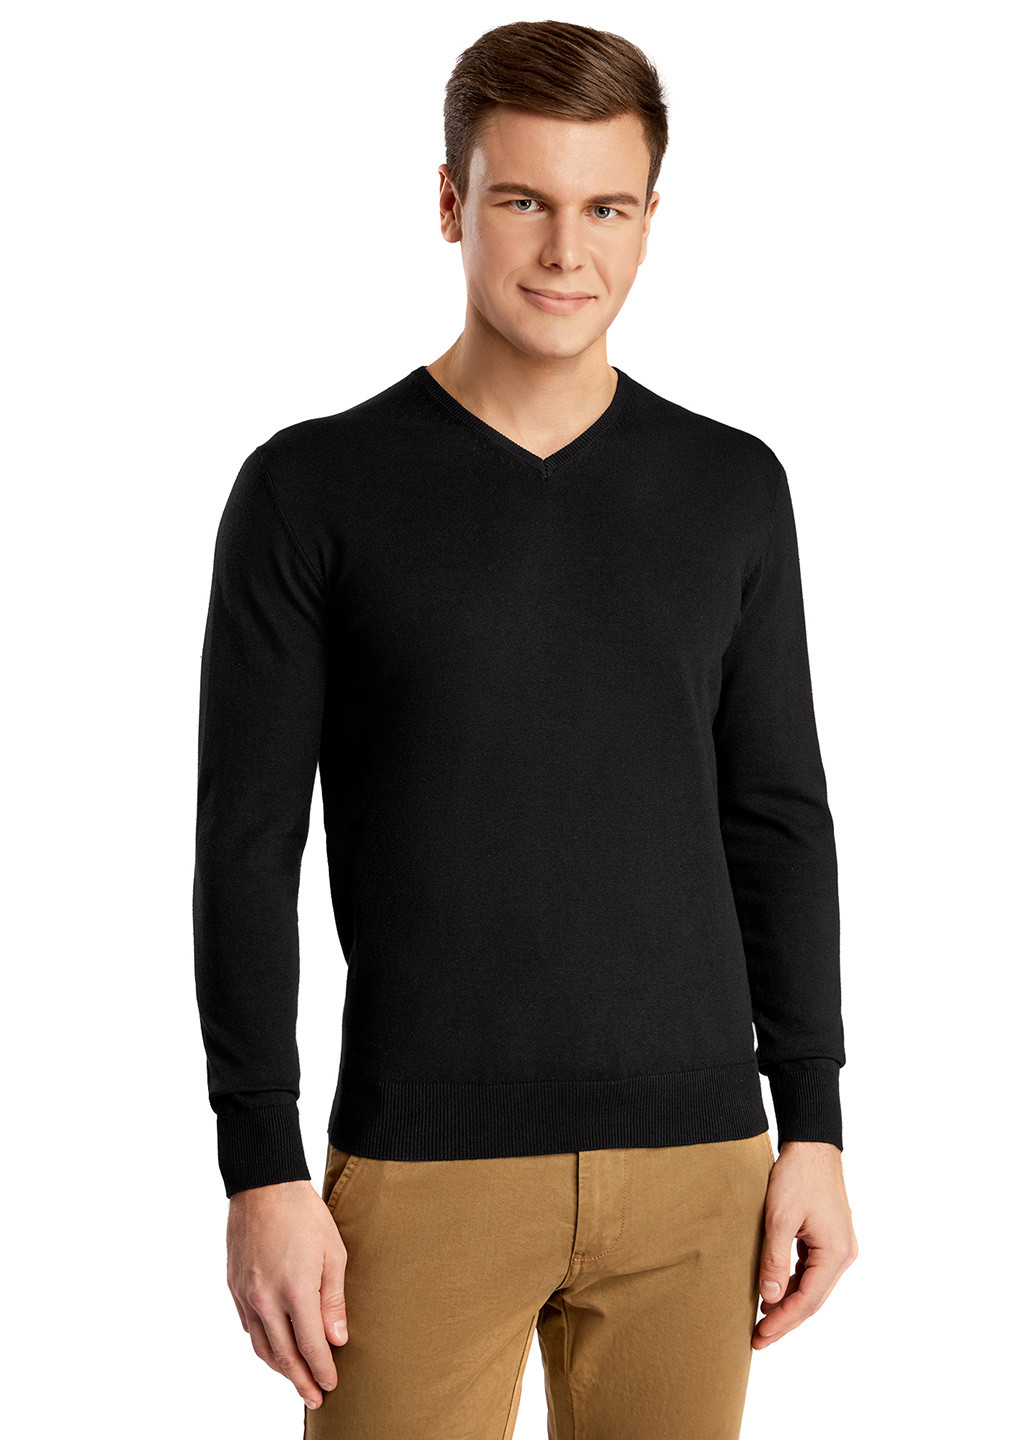 Черный демисезонный пуловер пуловер Oodji